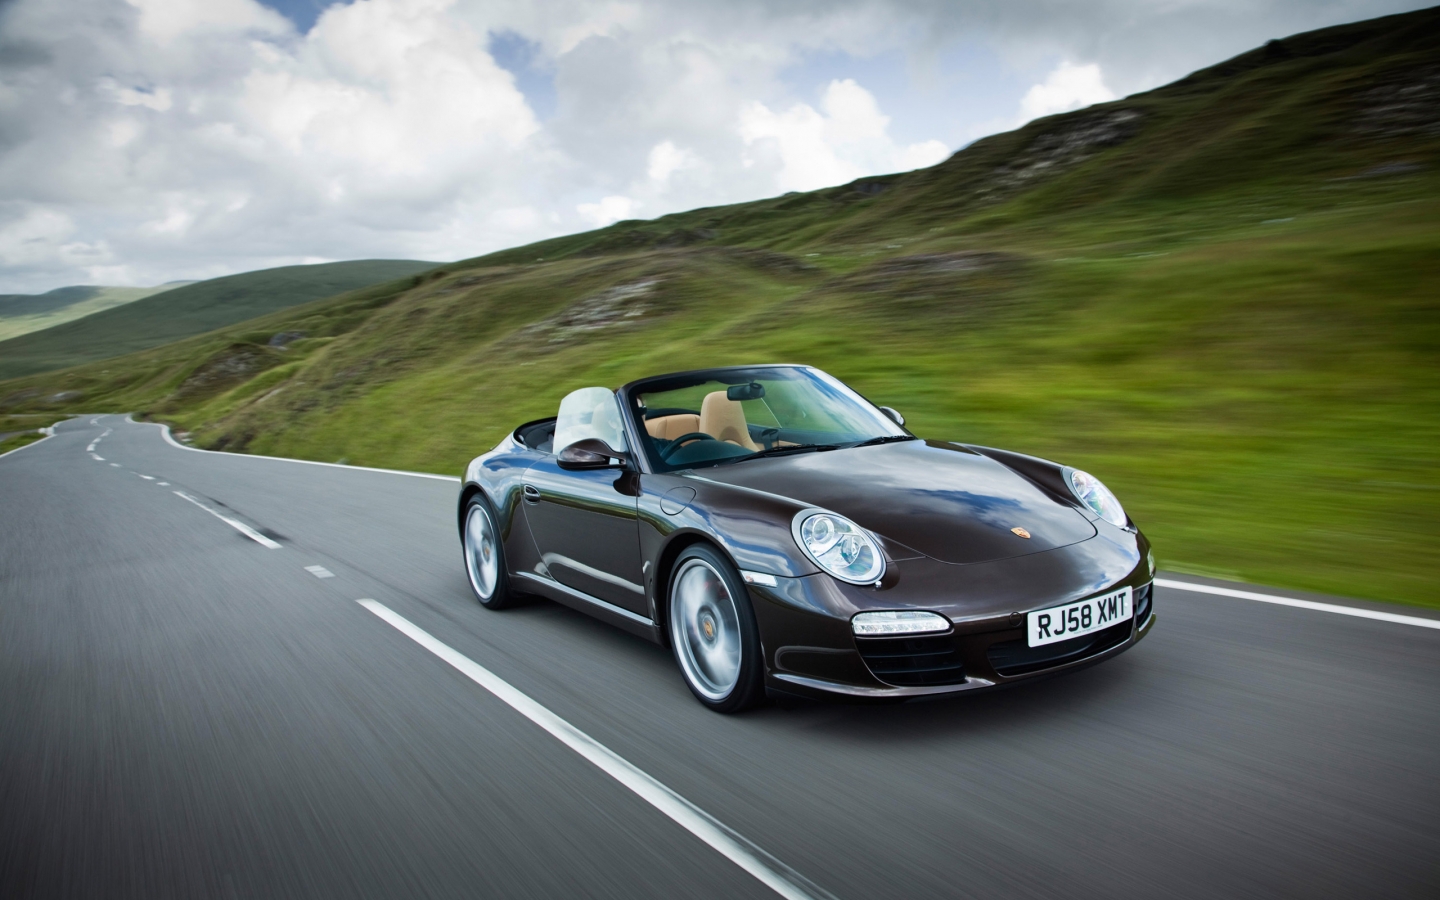 Beautifull 911 Porsche for 1440 x 900 widescreen resolution